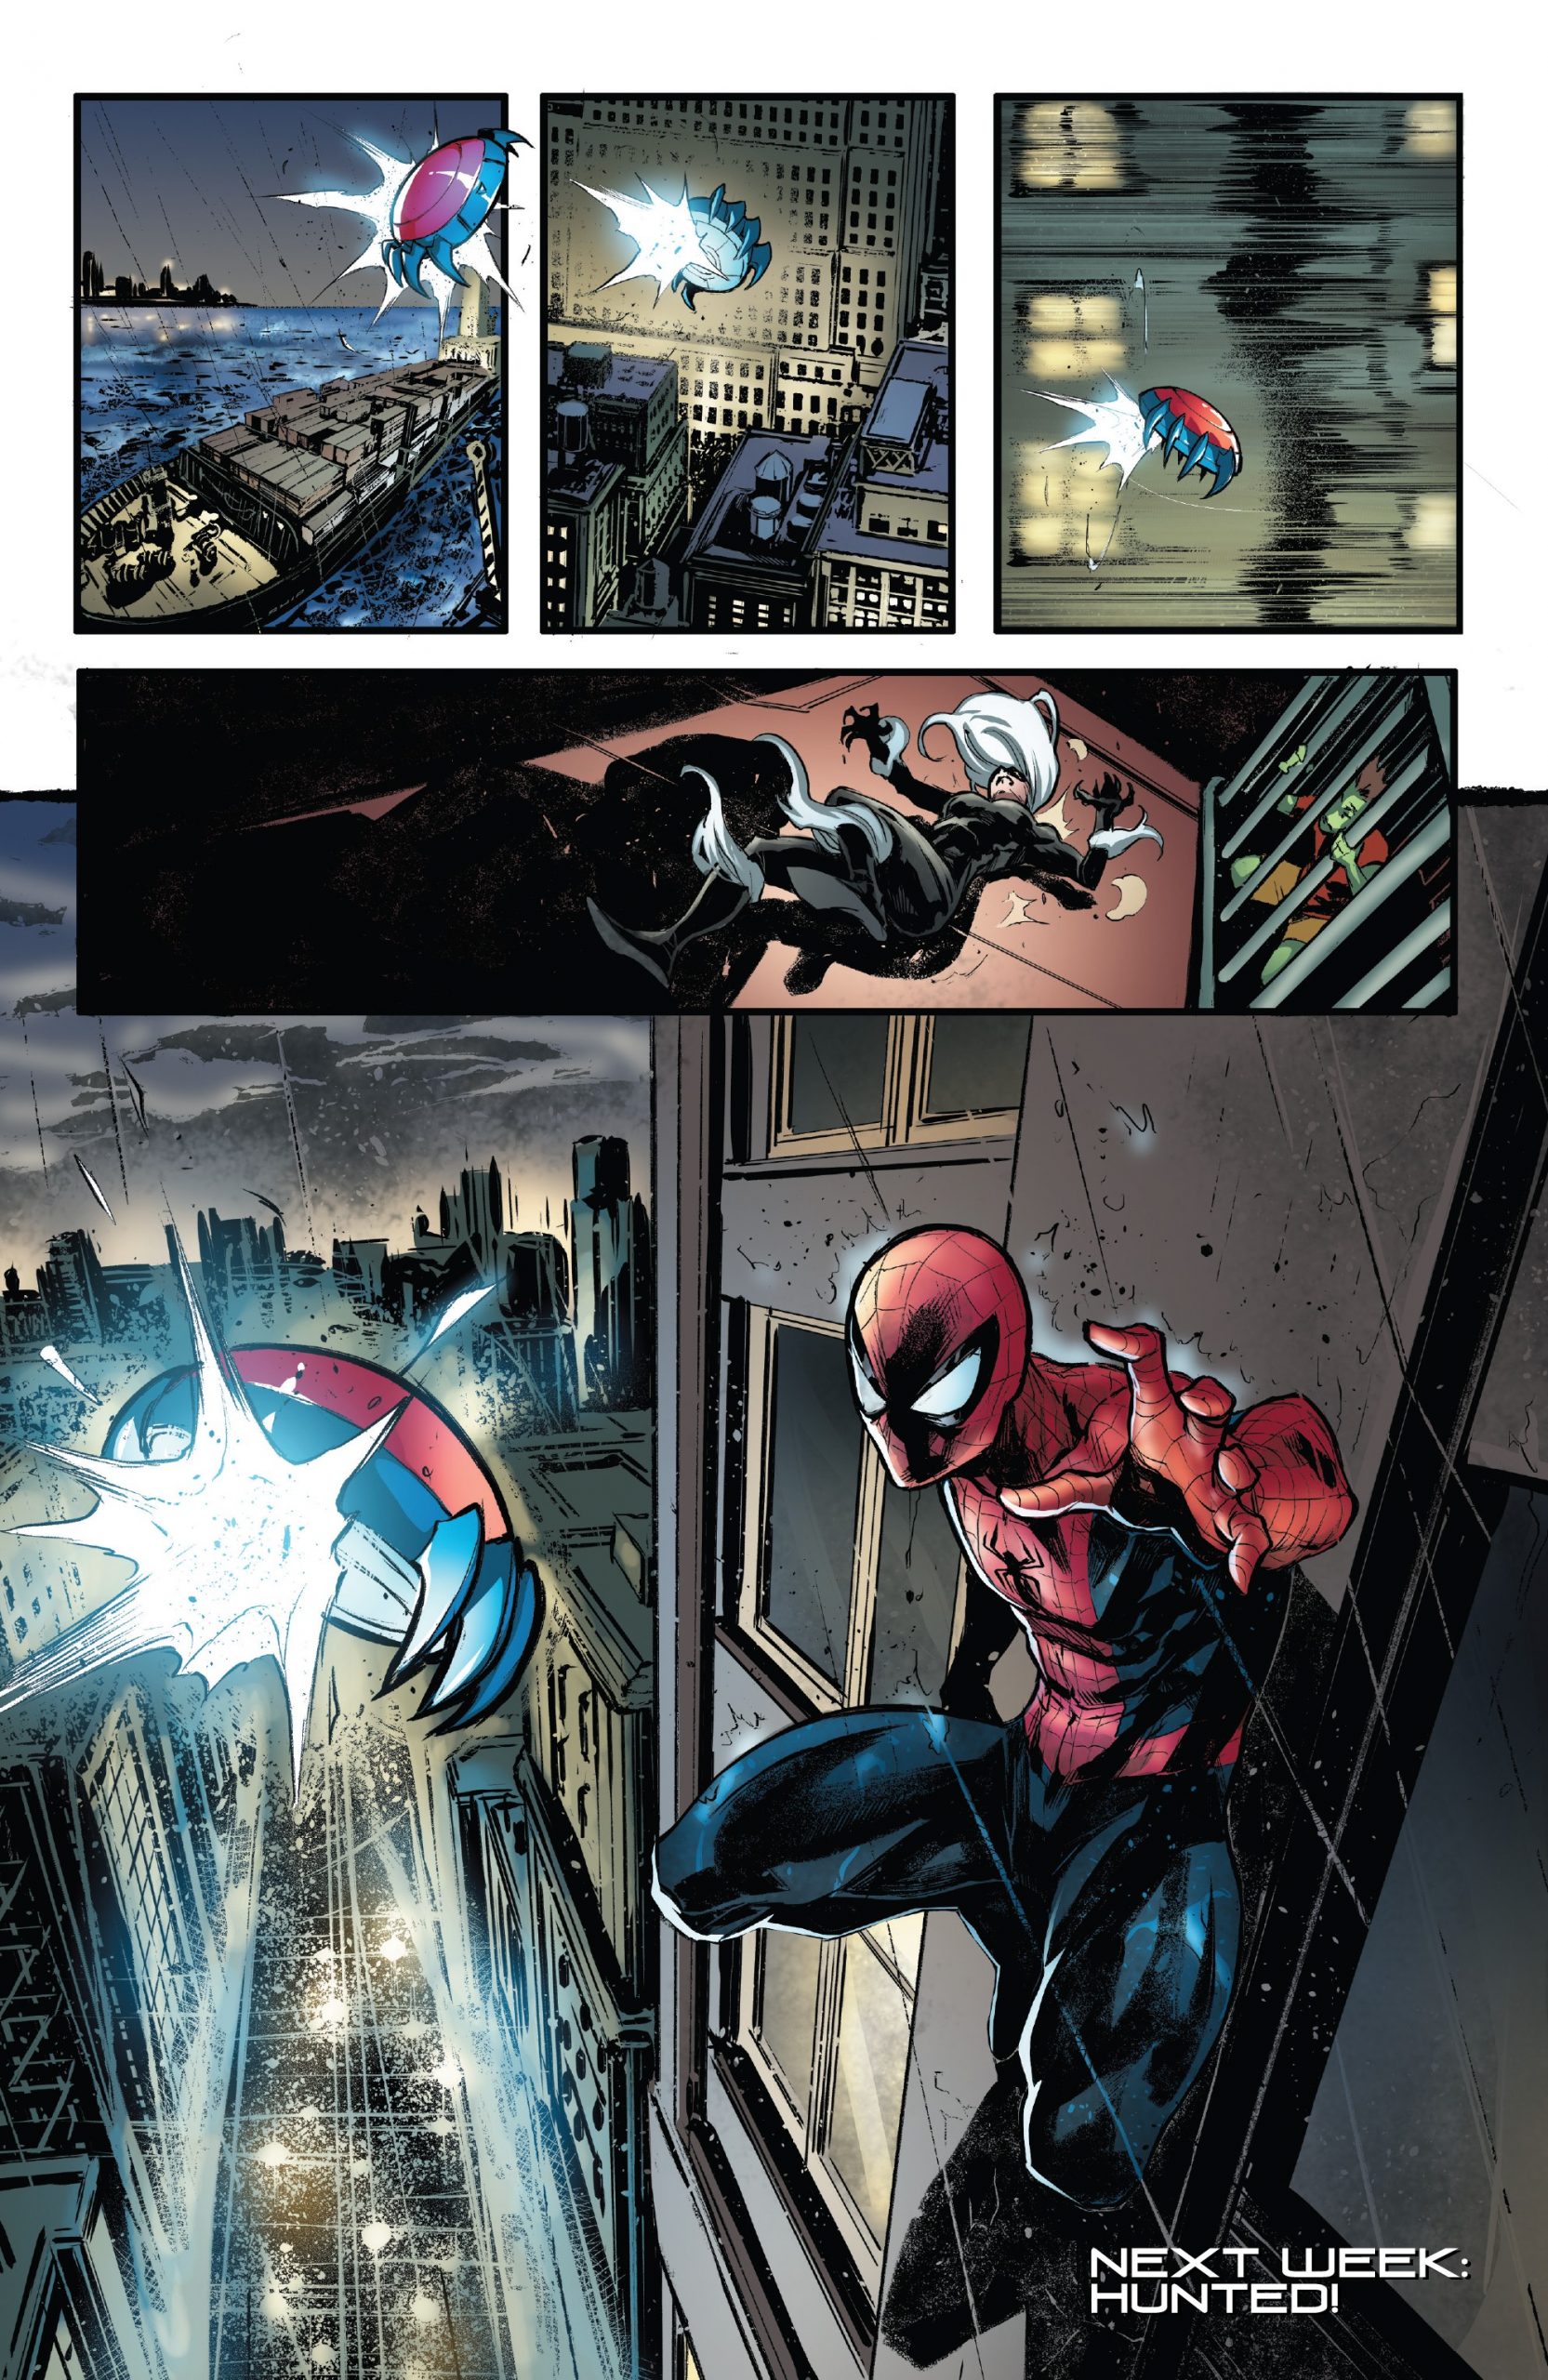 https://langgeek.net/wp-content/webpc-passthru.php?src=https://langgeek.net/wp-content/uploads/2022/01/Amazing-Spider-Man-016.HU-022-scaled.jpg&nocache=1